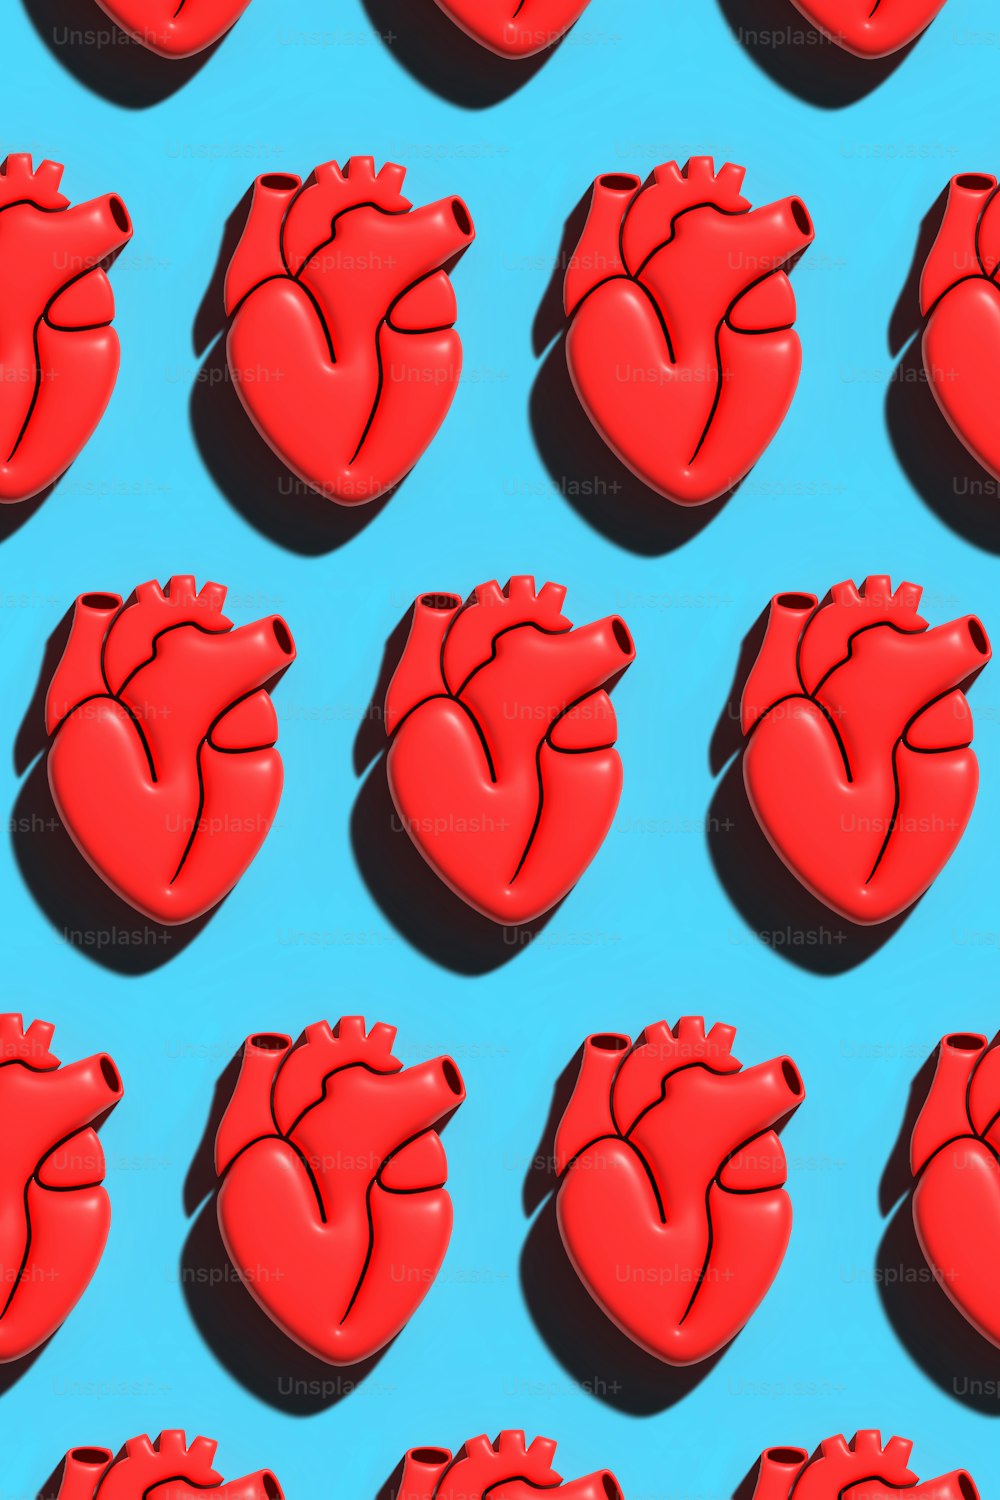 Eine Gruppe roter Herzen, die auf einer blauen Oberfläche sitzen